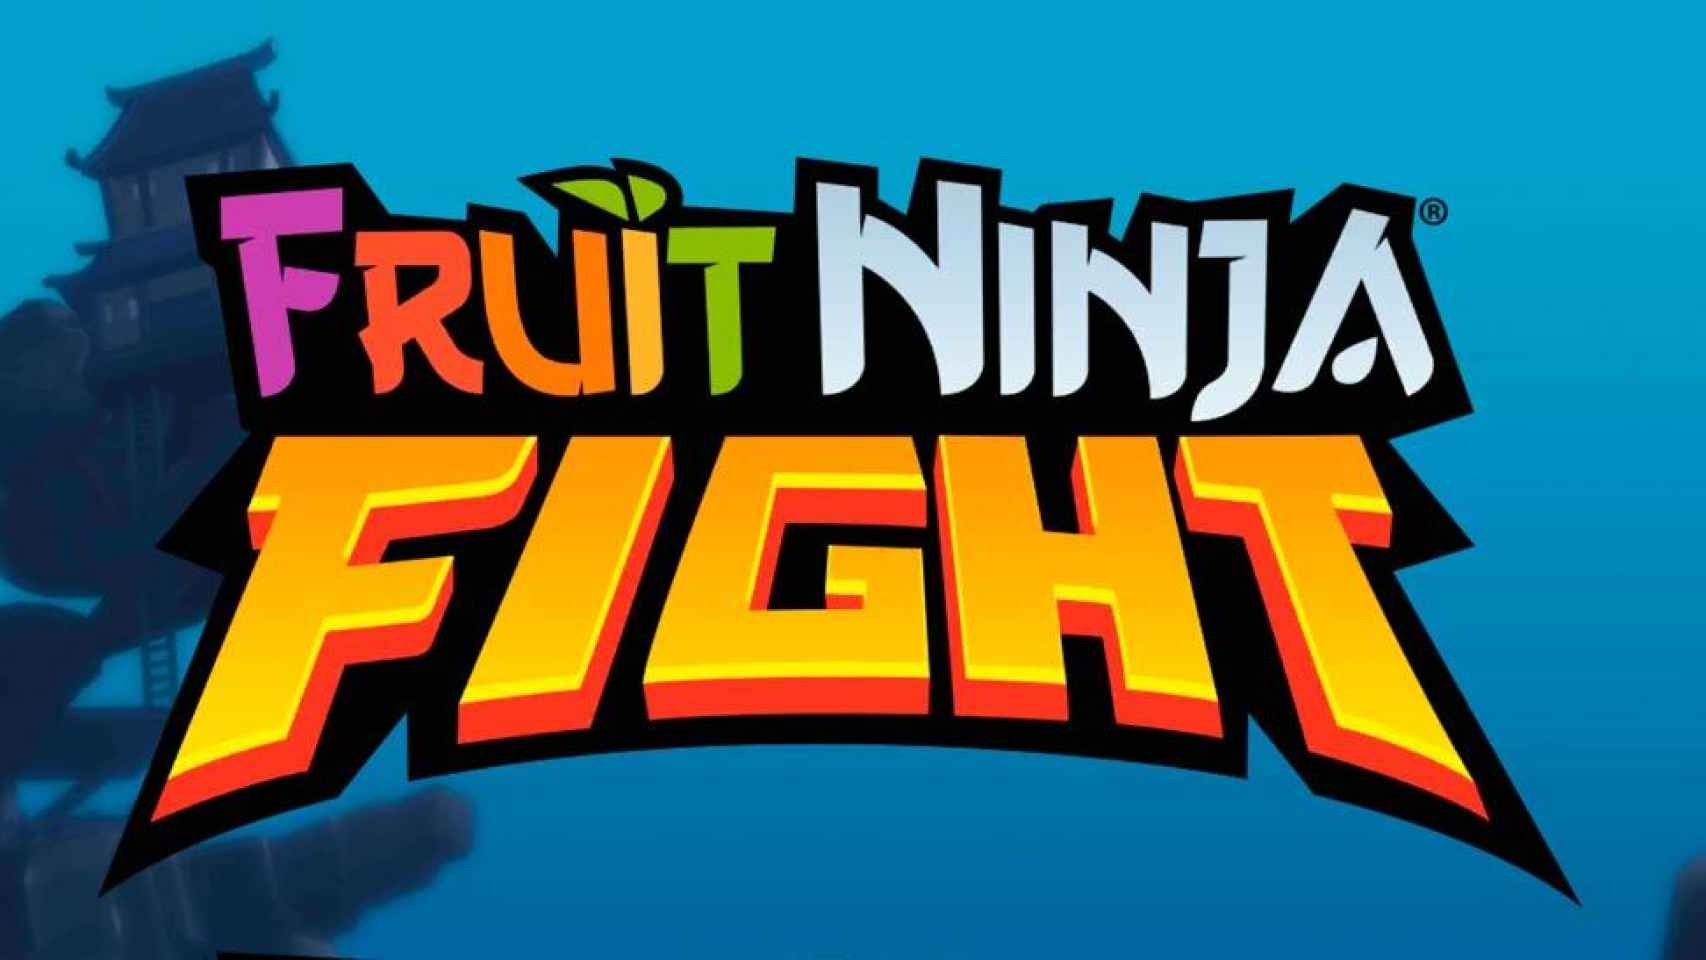 El mítico Fruit Ninja regresa con un espectacular juego PvP [APK]